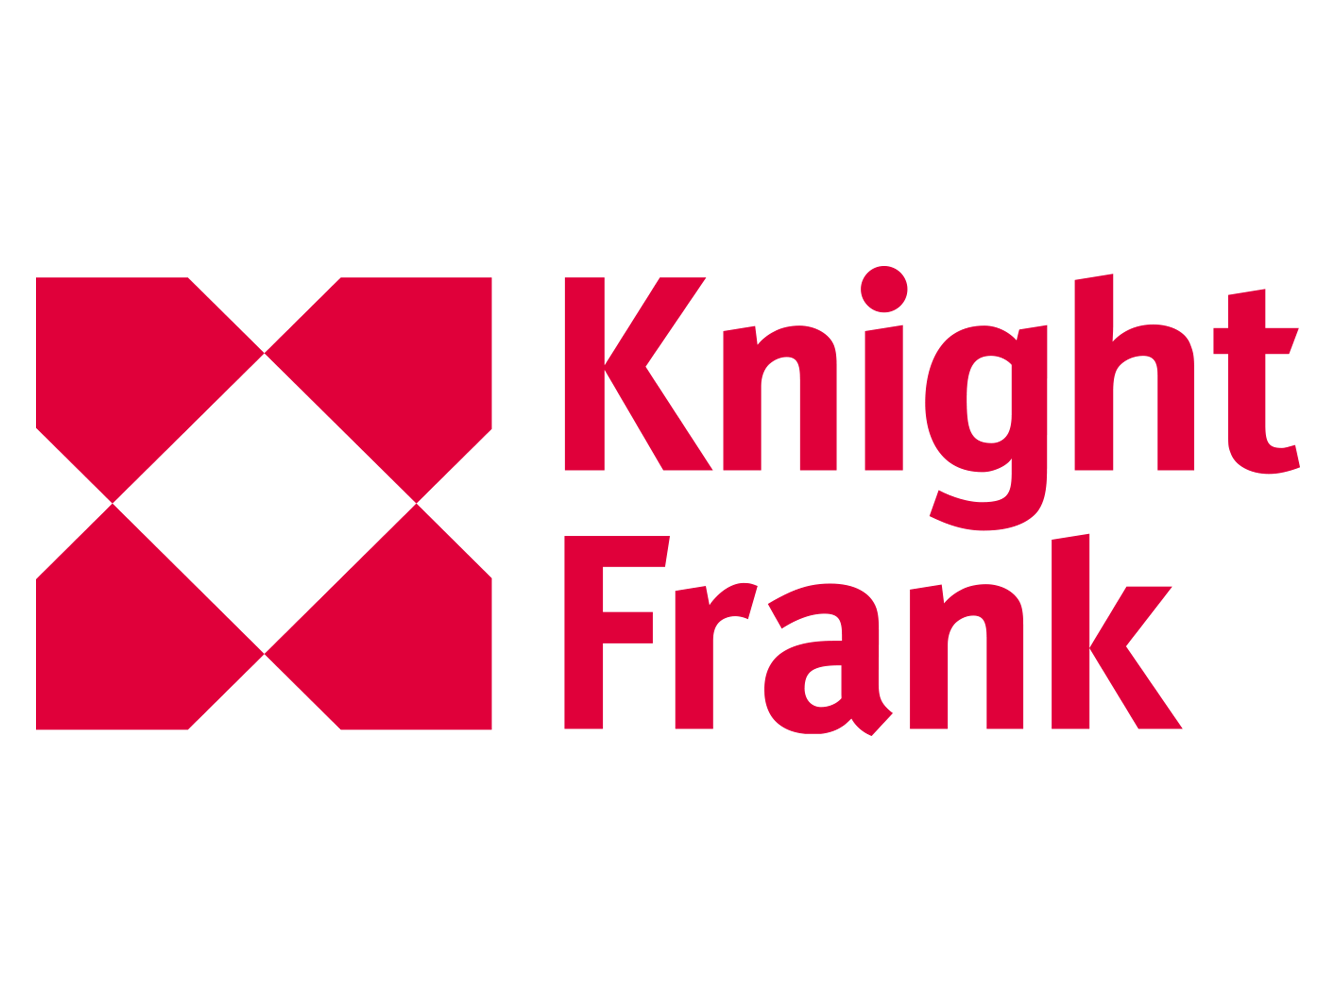 Knight Frank LLP